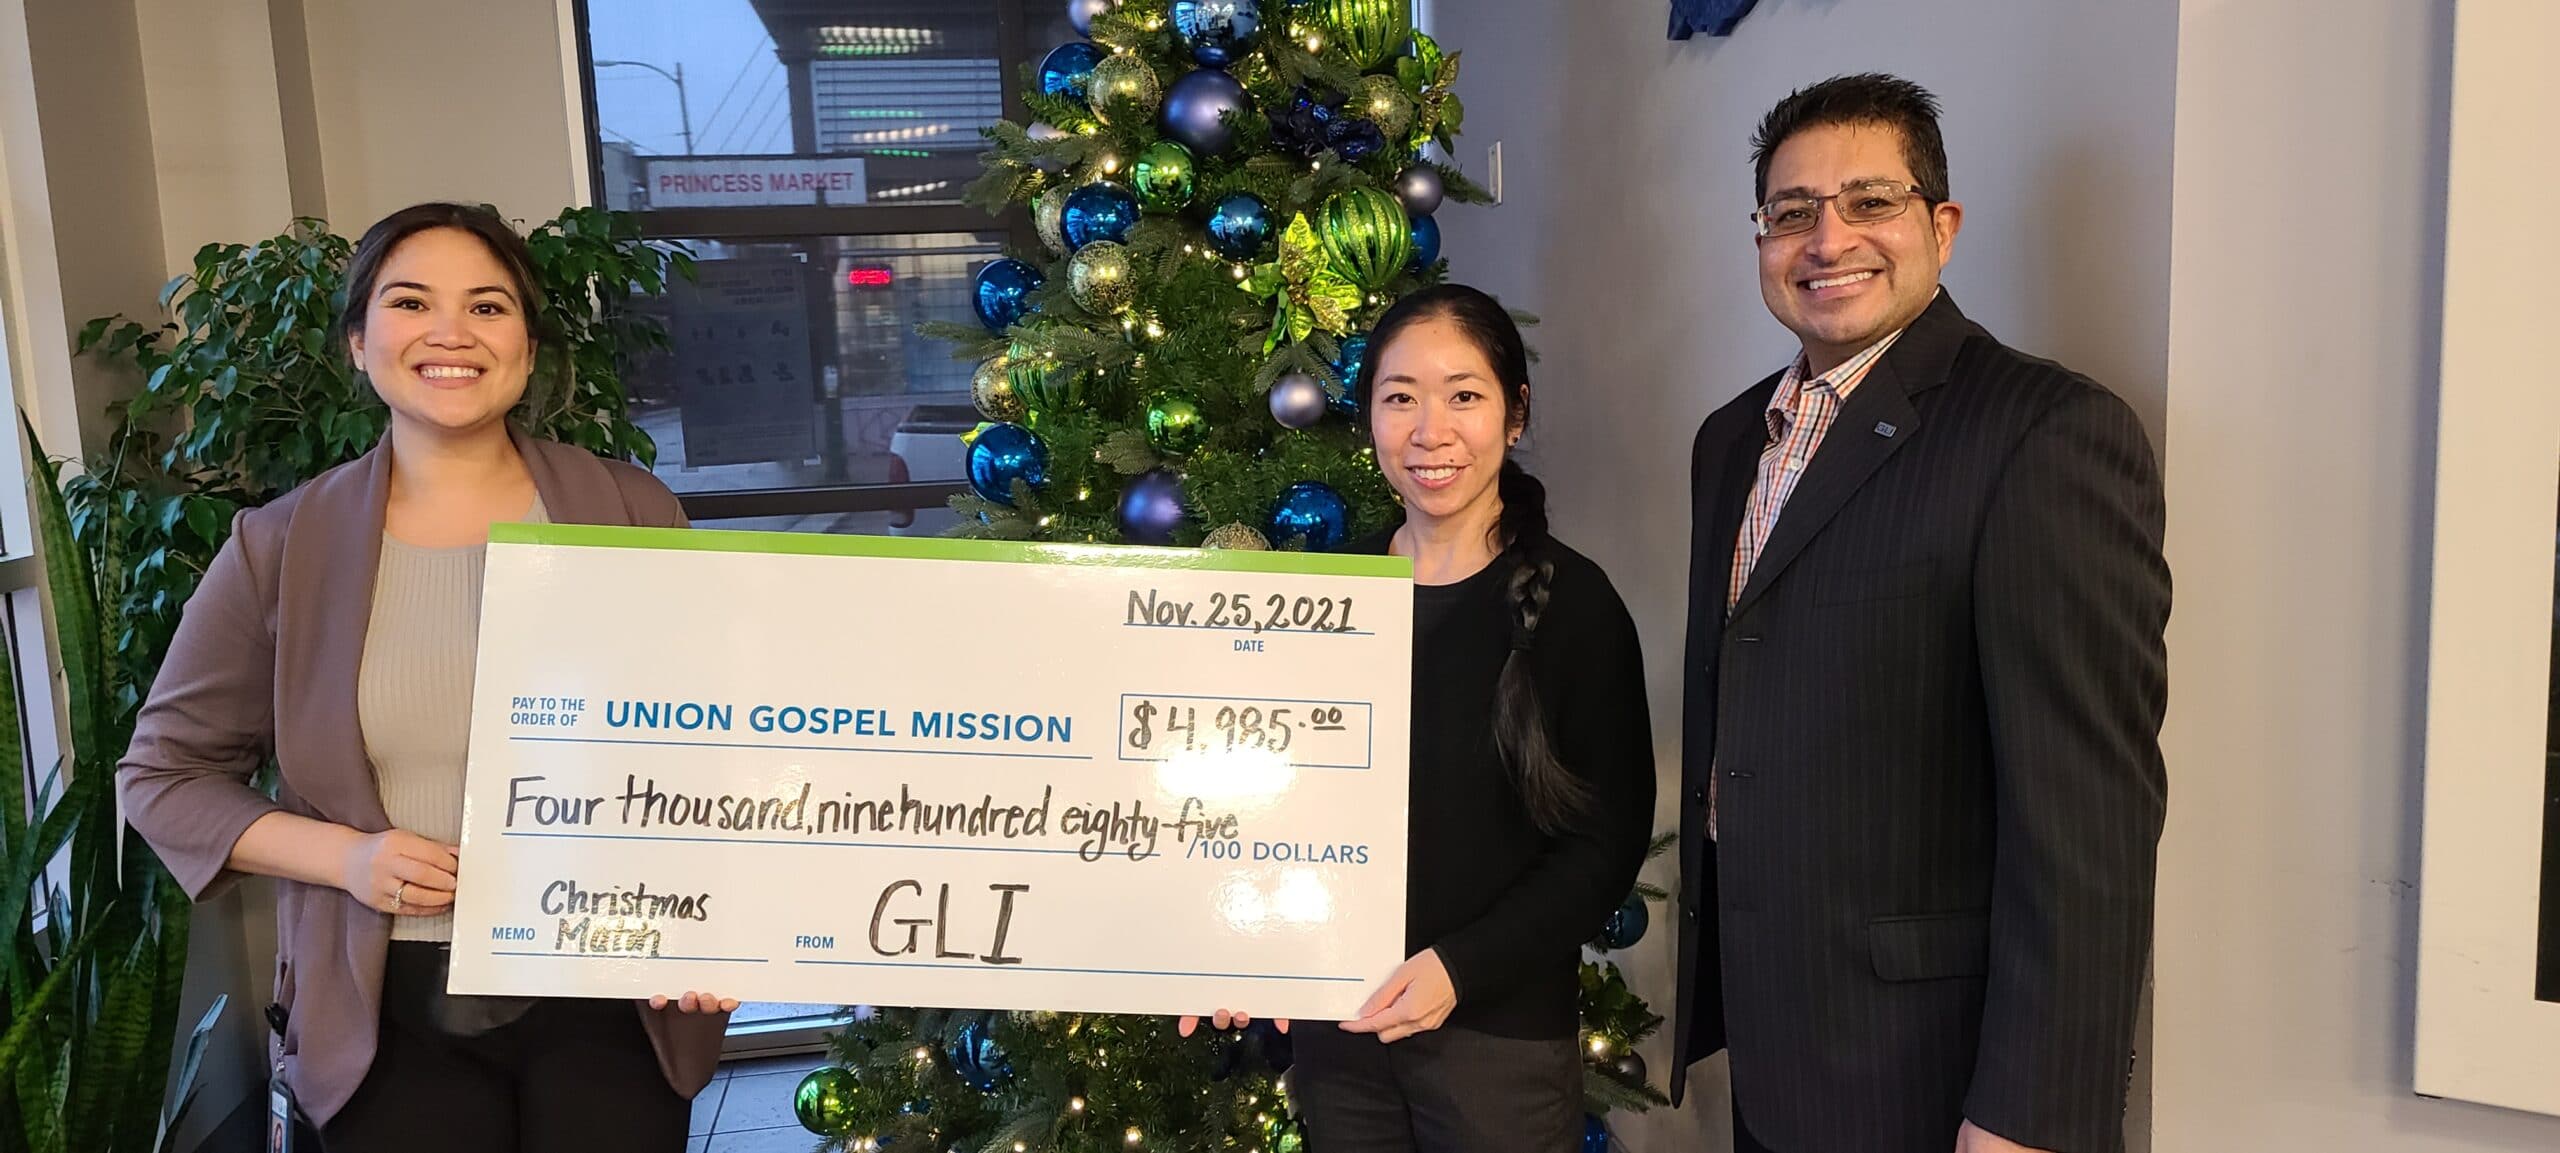  GLI Charitable Donation cheque to Union Gospel Mission BC, Canada